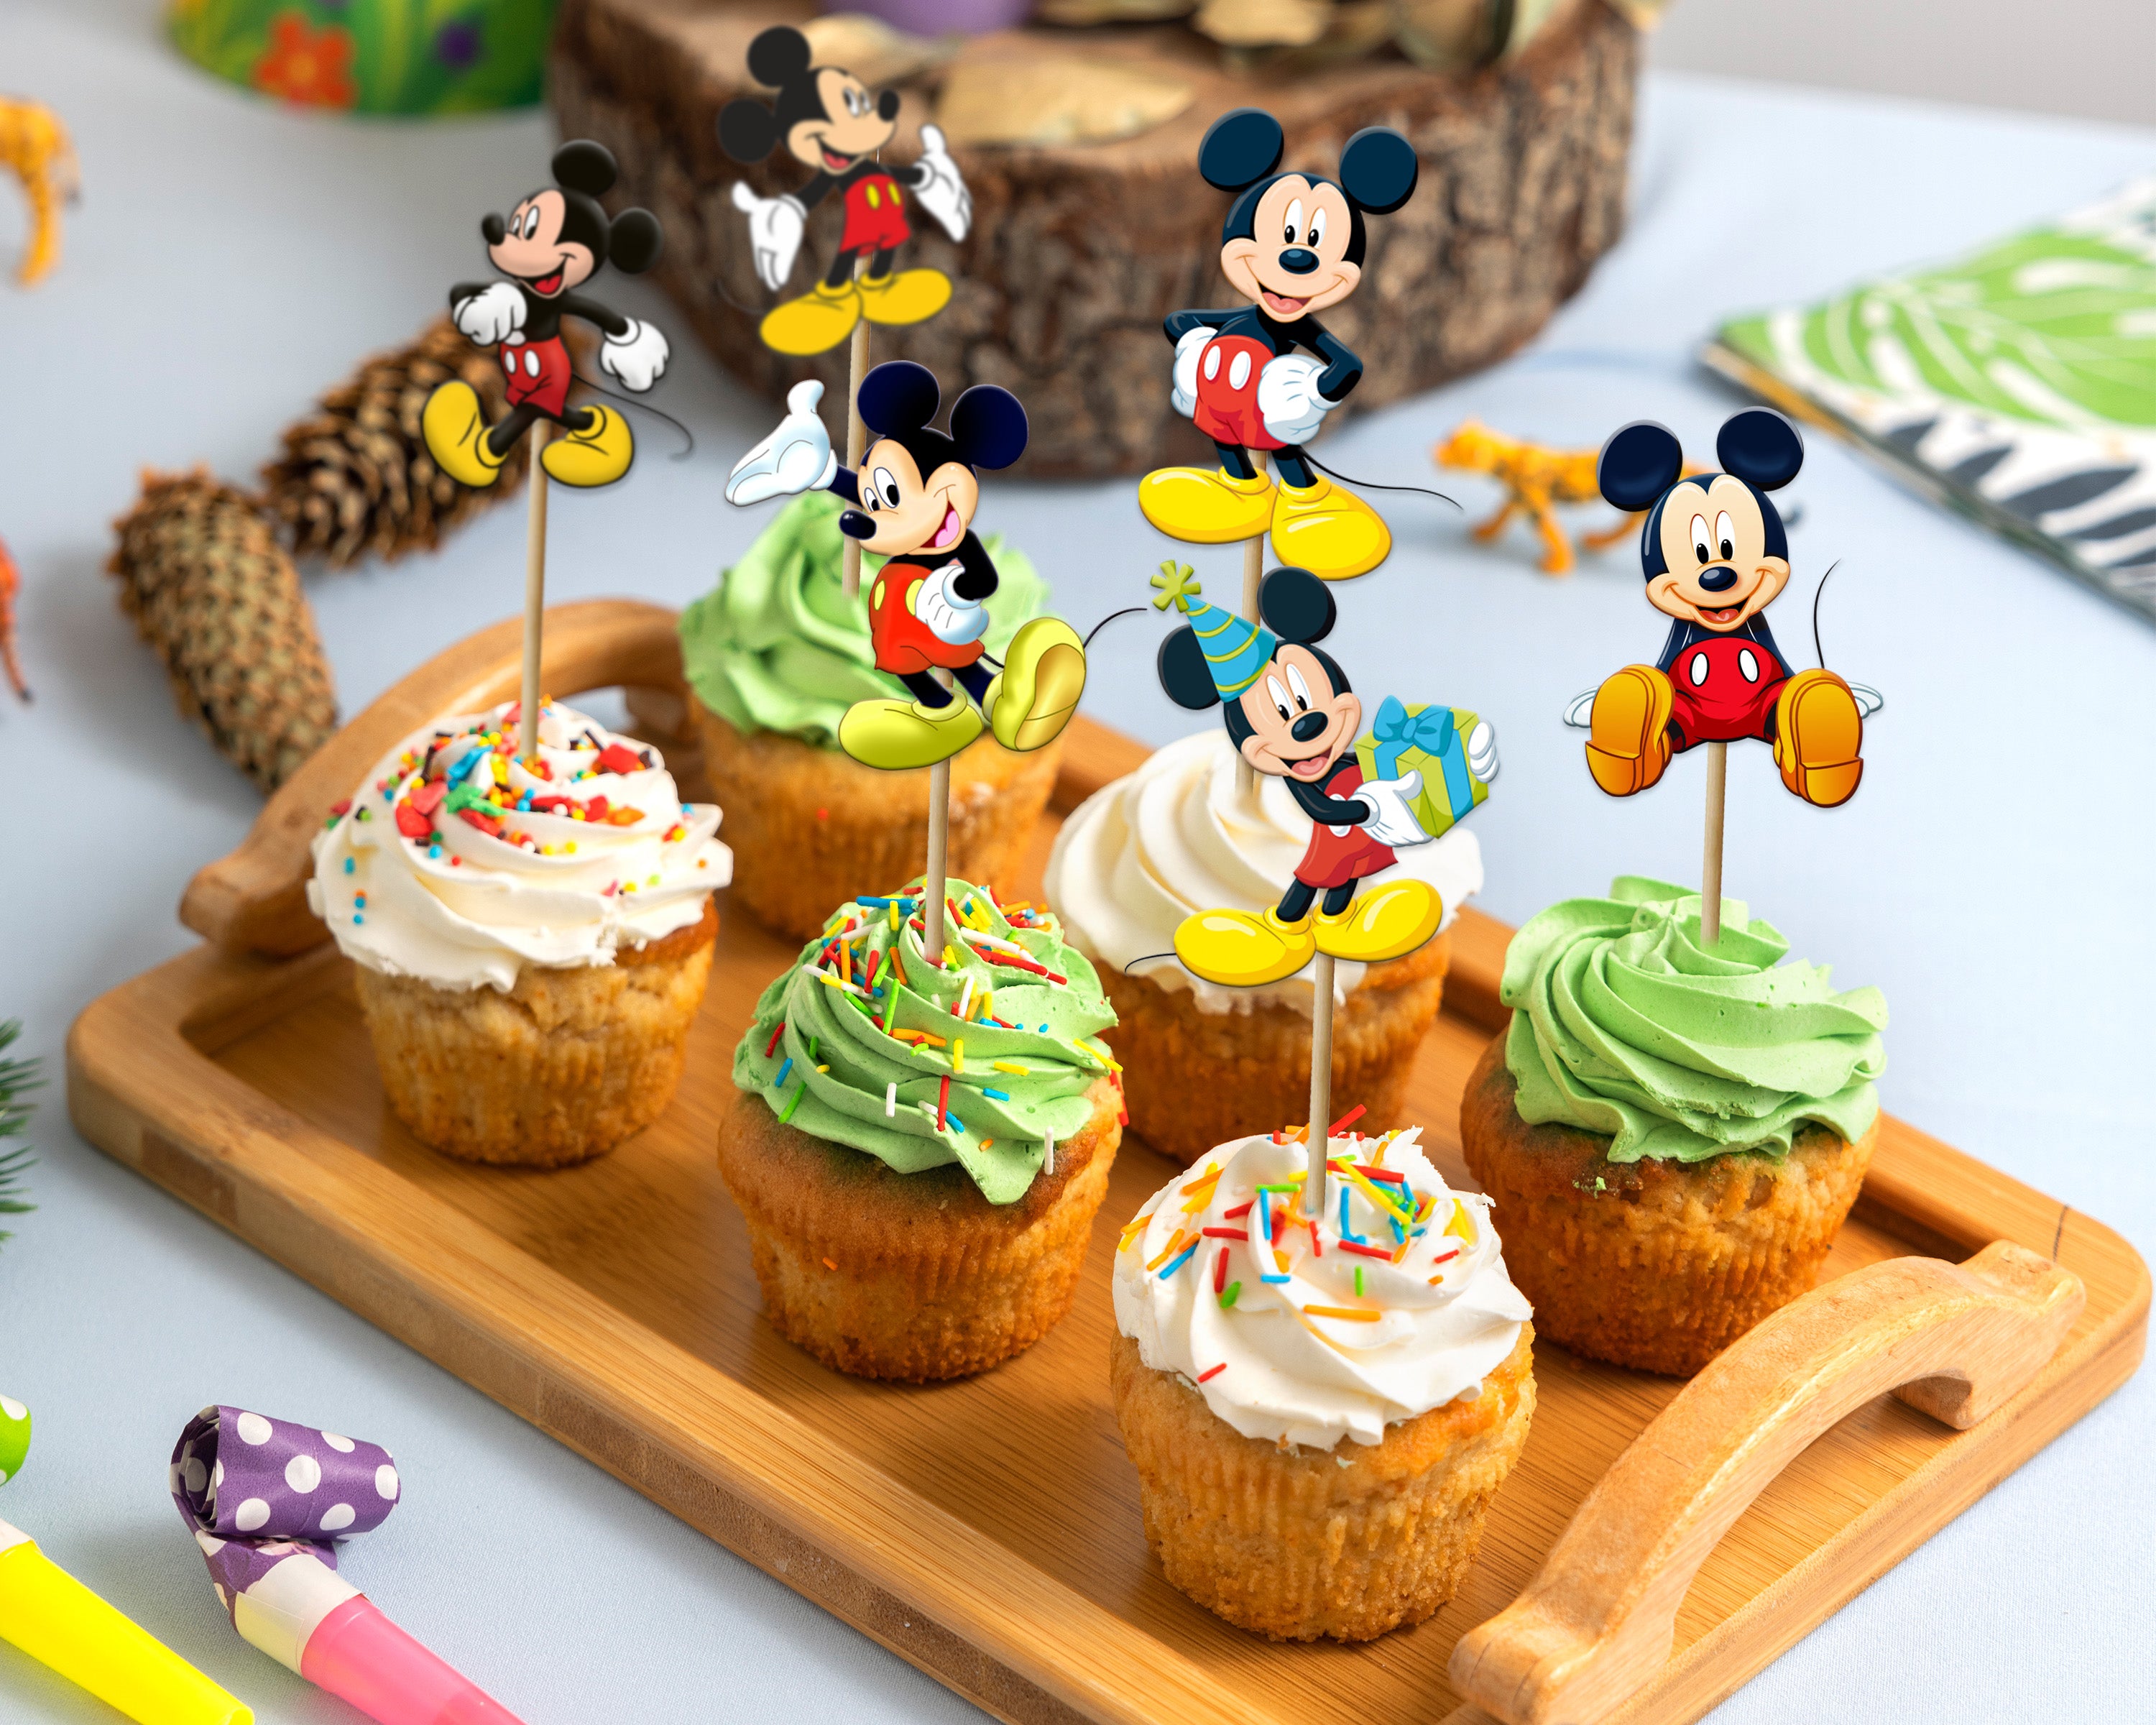 Birthday Cake|Mickey Mouse Theme Cake|Mickey Mouse Cake|बच्चों के बर्थडे पर  बनायें स्पेशल आसान केक - YouTube